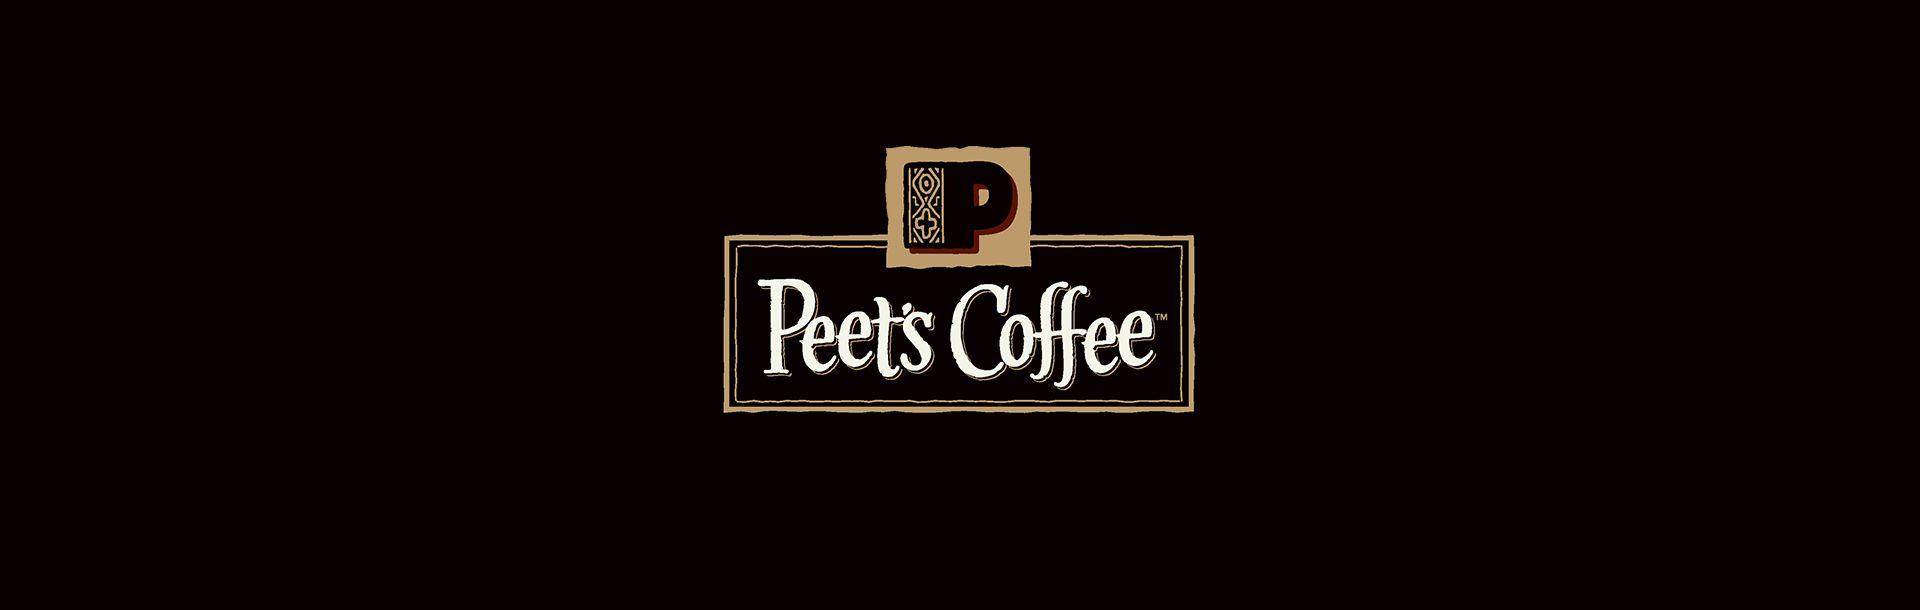 Peet's Coffee New Logo - Character | Peet's Coffee